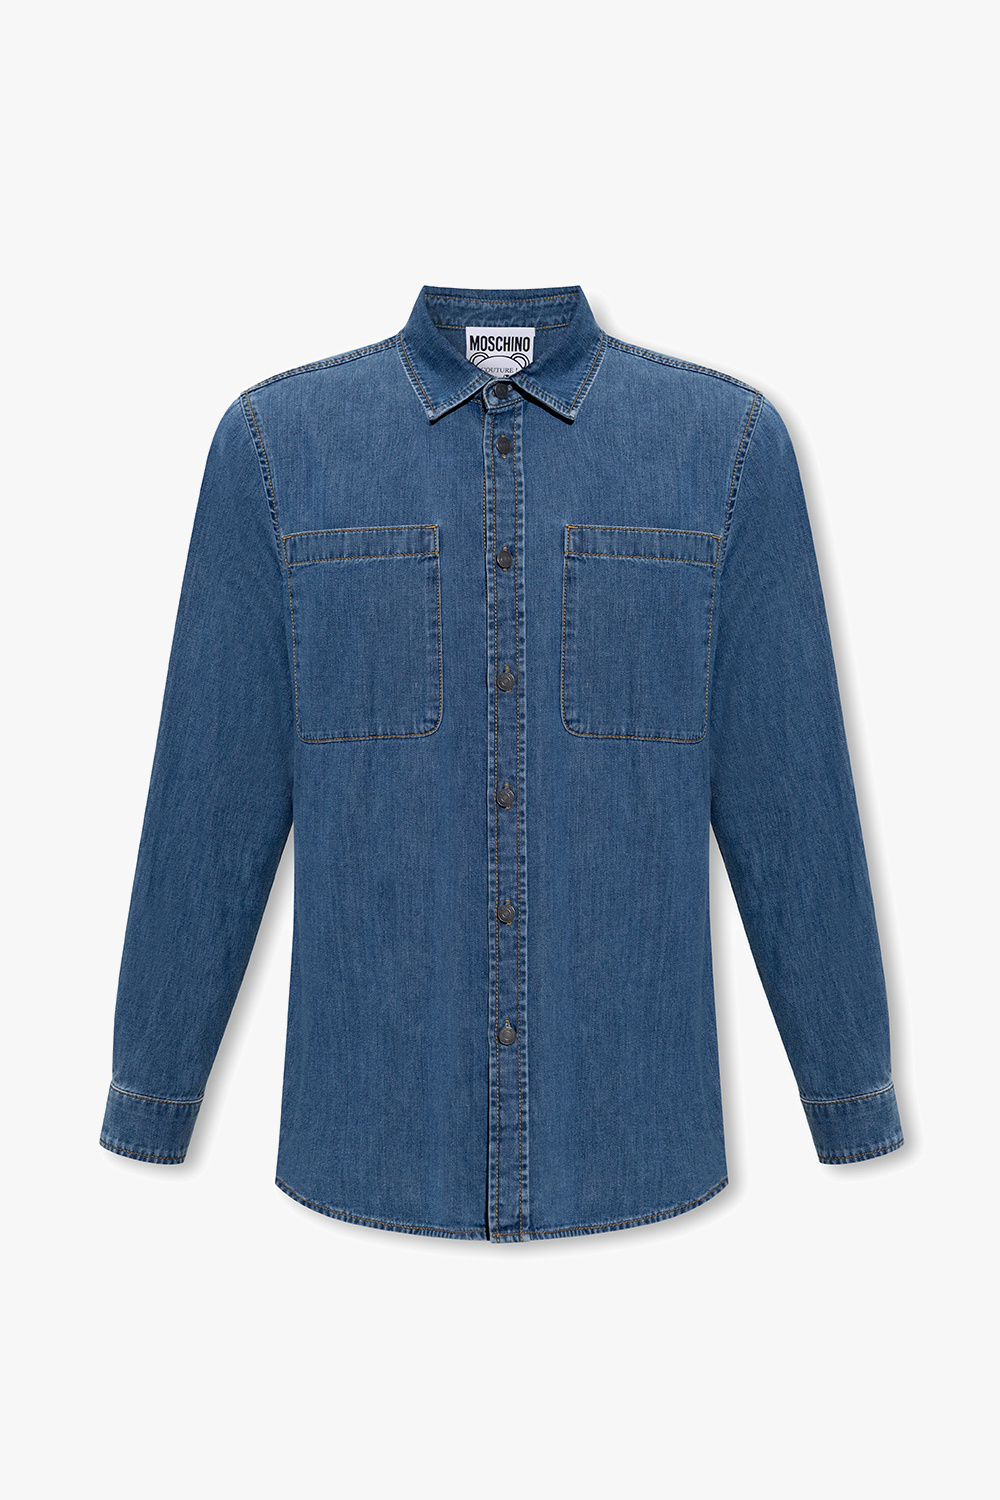 SchaferandweinerShops Australia - tailored suite jacket - Blue Denim shirt  Moschino